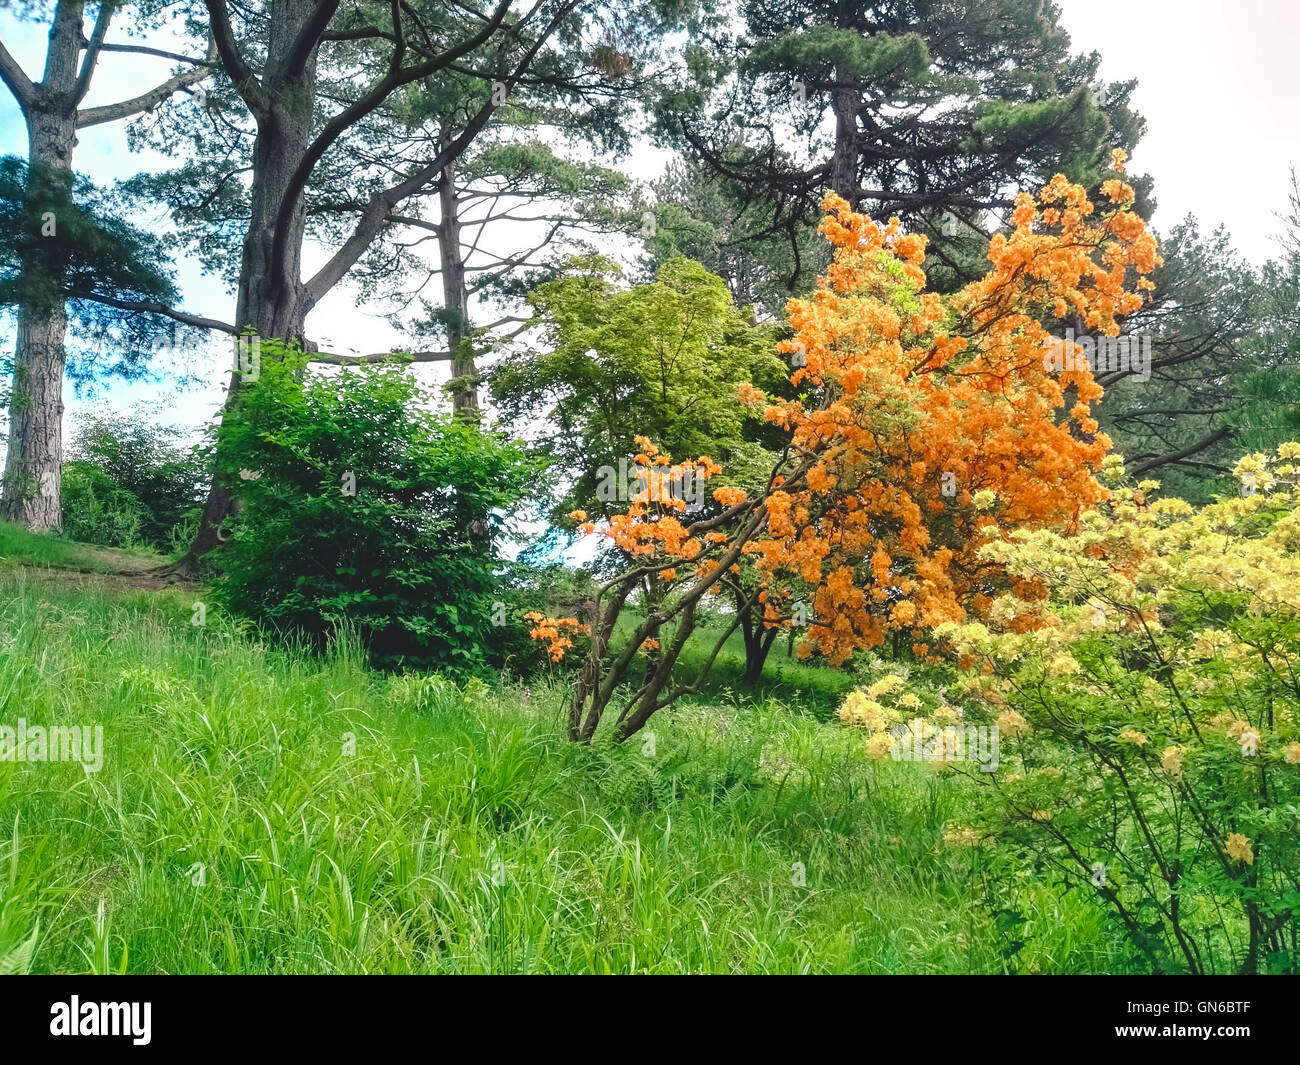 L'orange et le rouge des fleurs et des arbres dans un jardin Banque D'Images